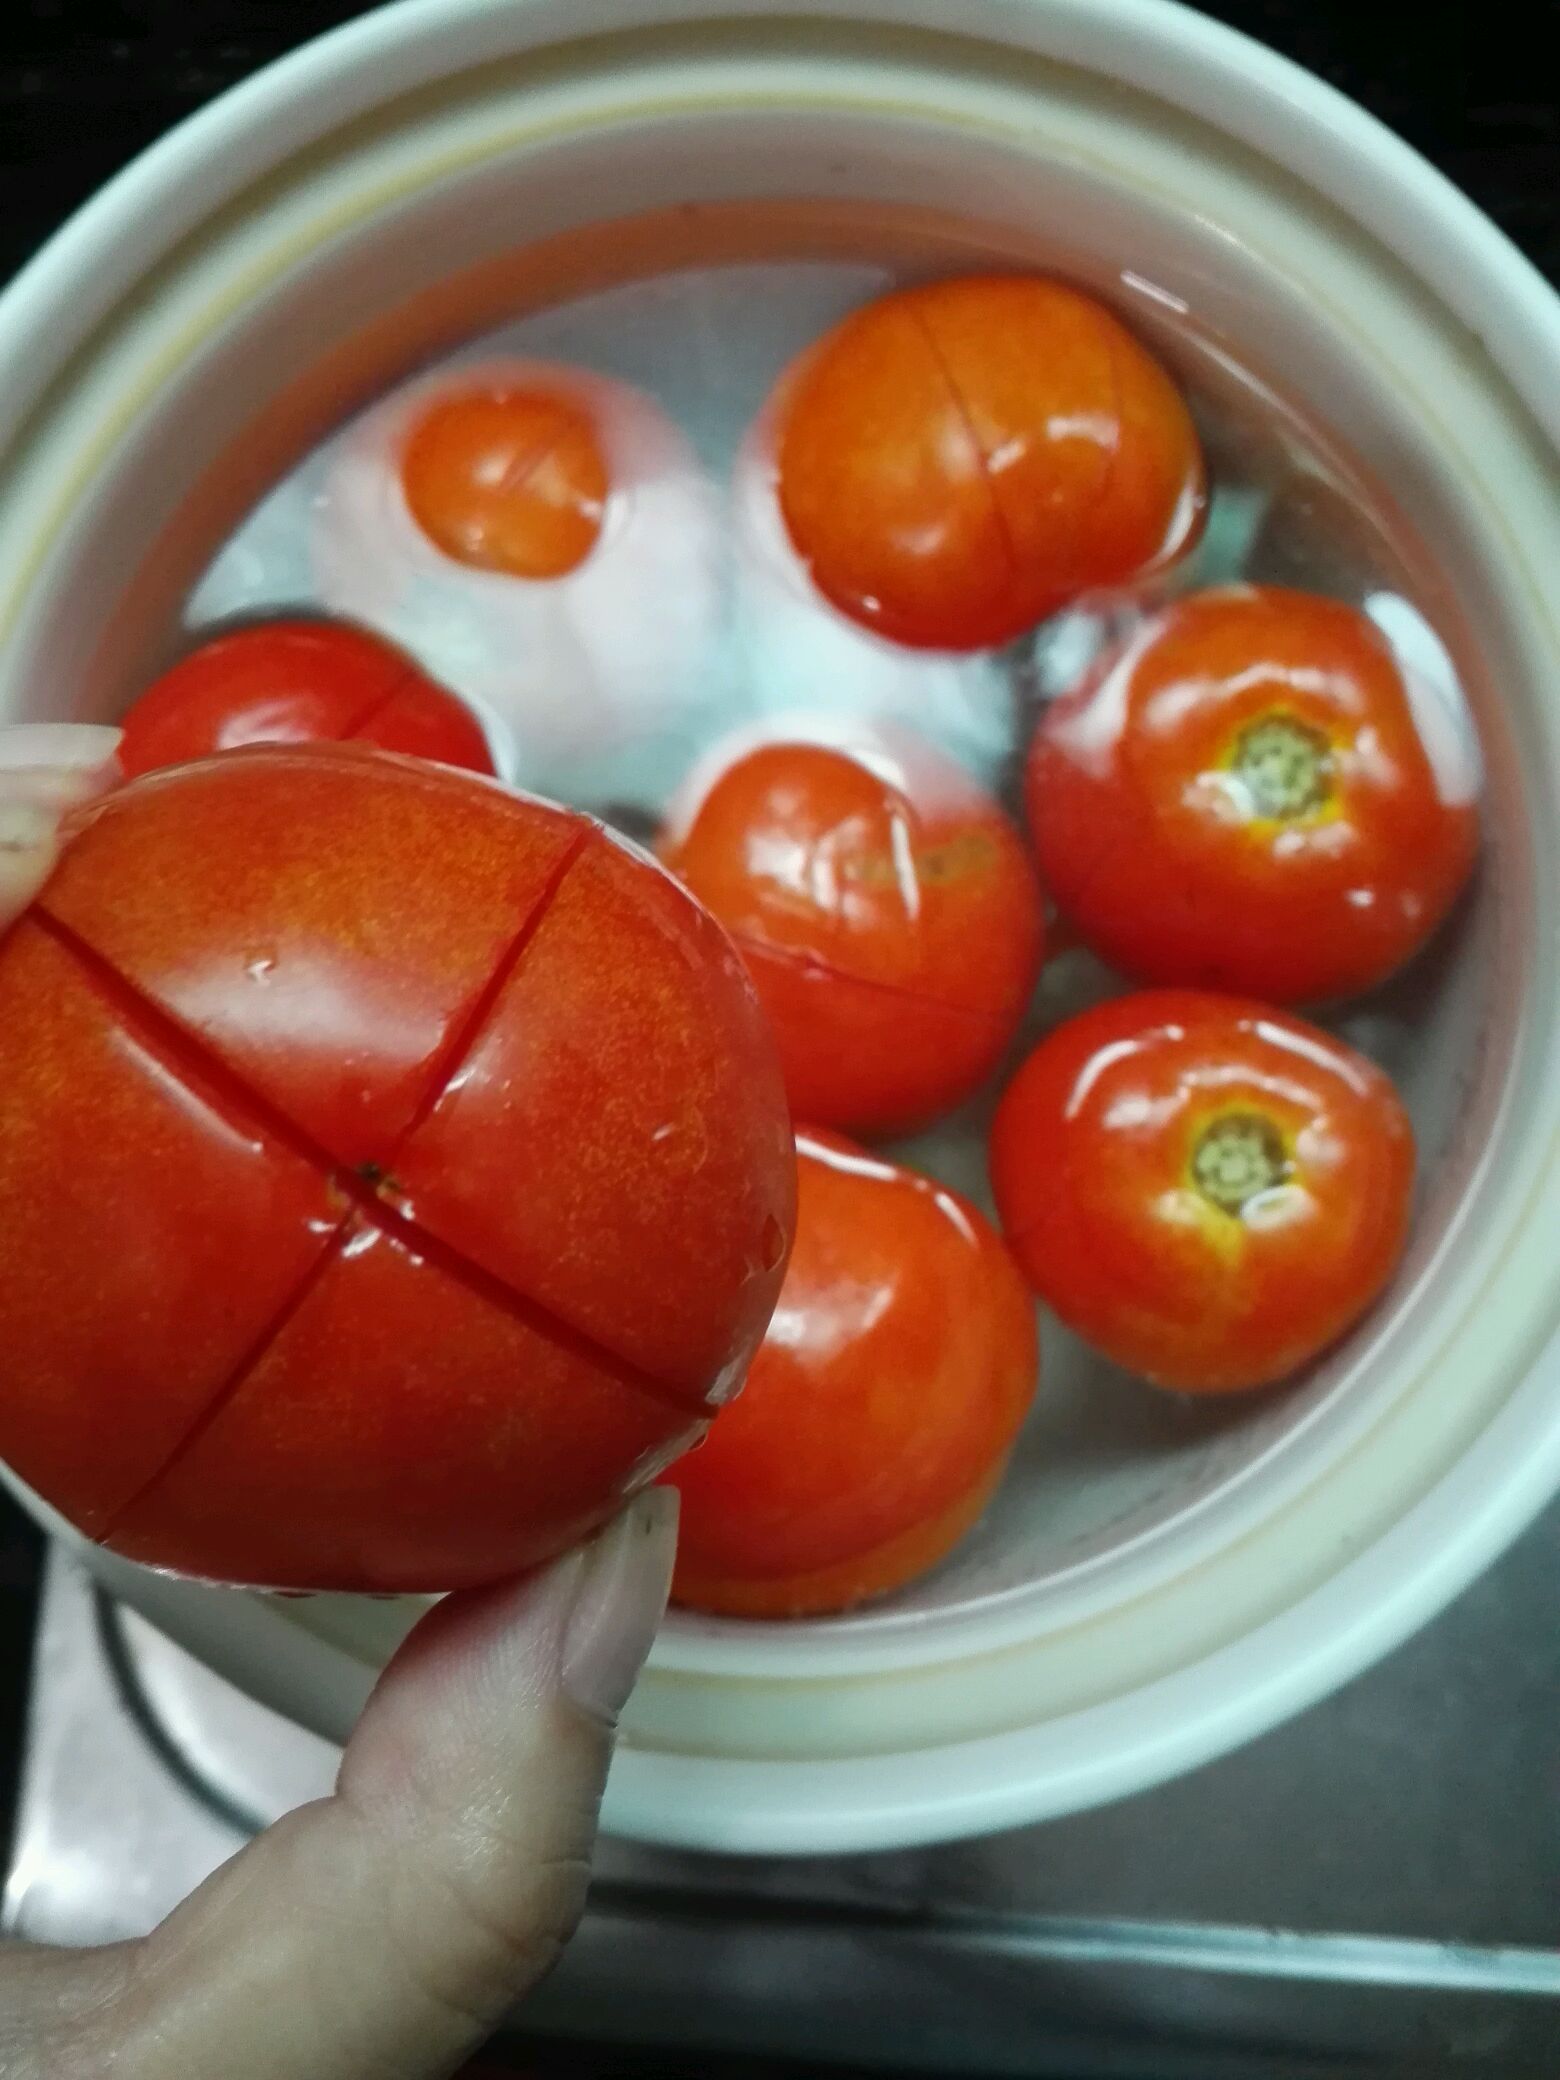 与调味料的西红柿酱番茄酱在一个玻璃碗 库存照片. 图片 包括有 绿色, 胡椒, 自创, 烹调, 快餐, 磨碎 - 86903178